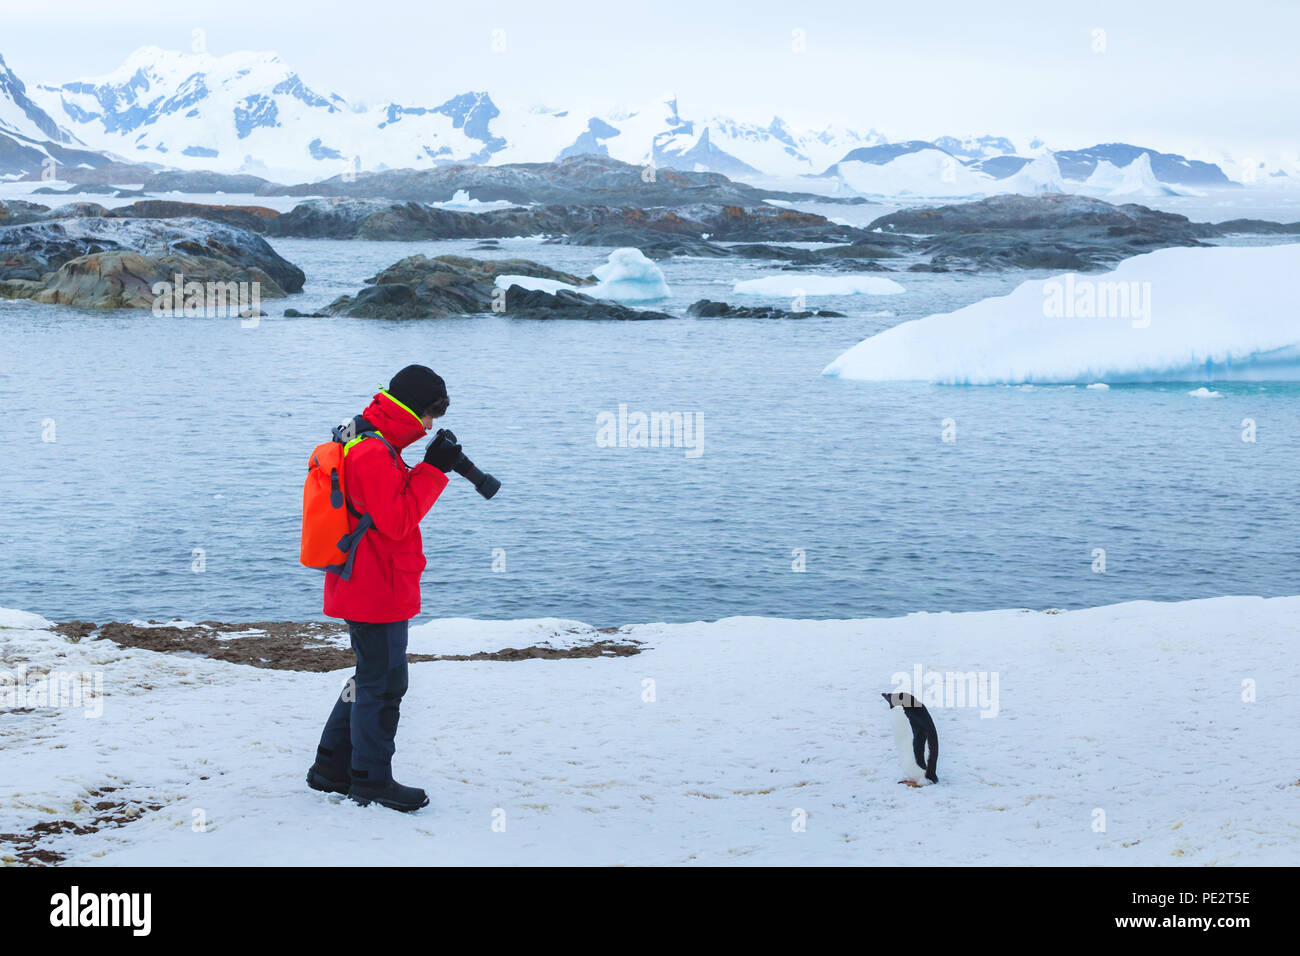 Fotograf und Modell, Vogel- und Pflanzenwelt Natur Fotografie, Tourist, Foto der Pinguine in der Antarktis mit großen DSLR-Kamera und Teleobjektiv Stockfoto